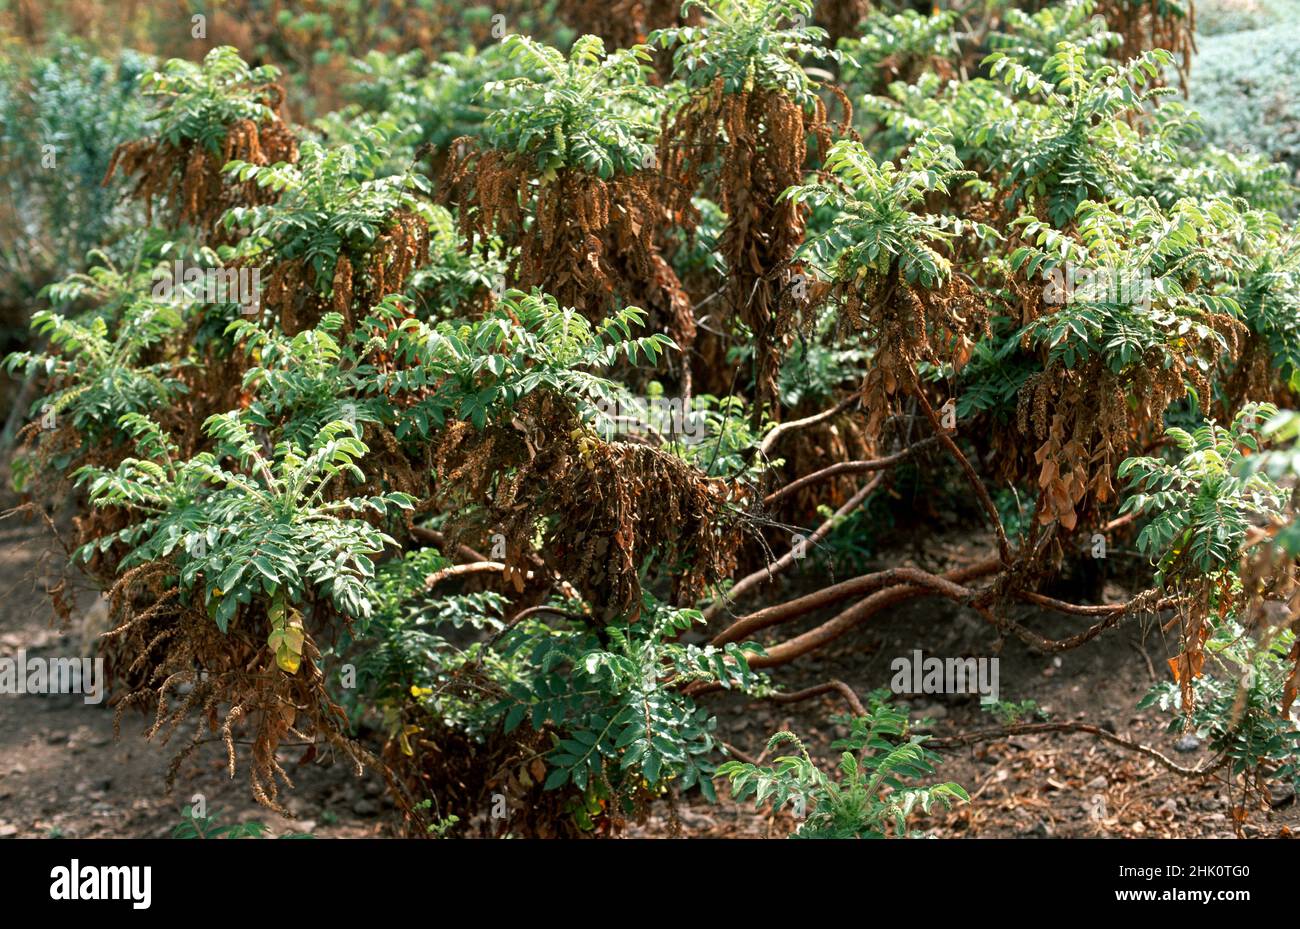 Bencomia de monte (Bencomia caudata) is a shrub endemic to Macaronesia (Gran Canaria, Tenerife, La Palma and Madeira). This photo was taken in Canary Stock Photo